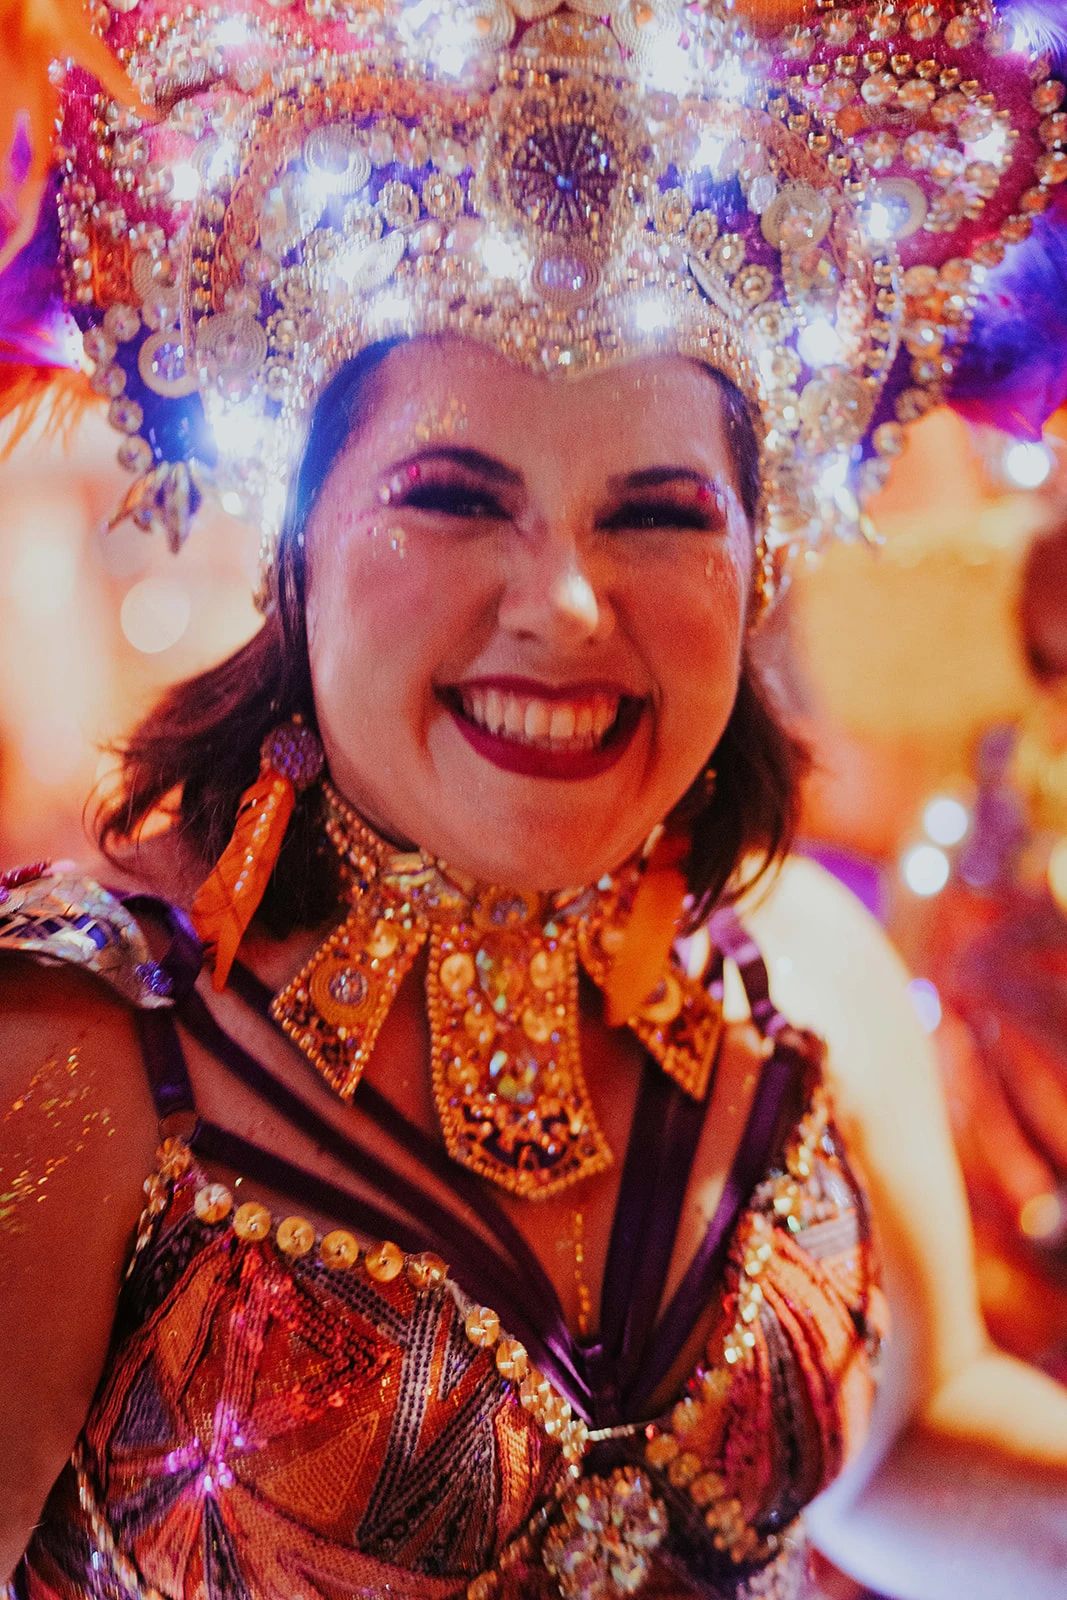 La quema del muñeco del Rey Momo, una efigie de tamaño real, marca el fin de la temporada de Carnaval de Aruba el martes de Carnaval, justo antes del miércoles de Ceniza. "Ahi ya se termina la fiesta y todos nos volcamos a la fe", manifiesta Marisol Sánchez Maldonado. 